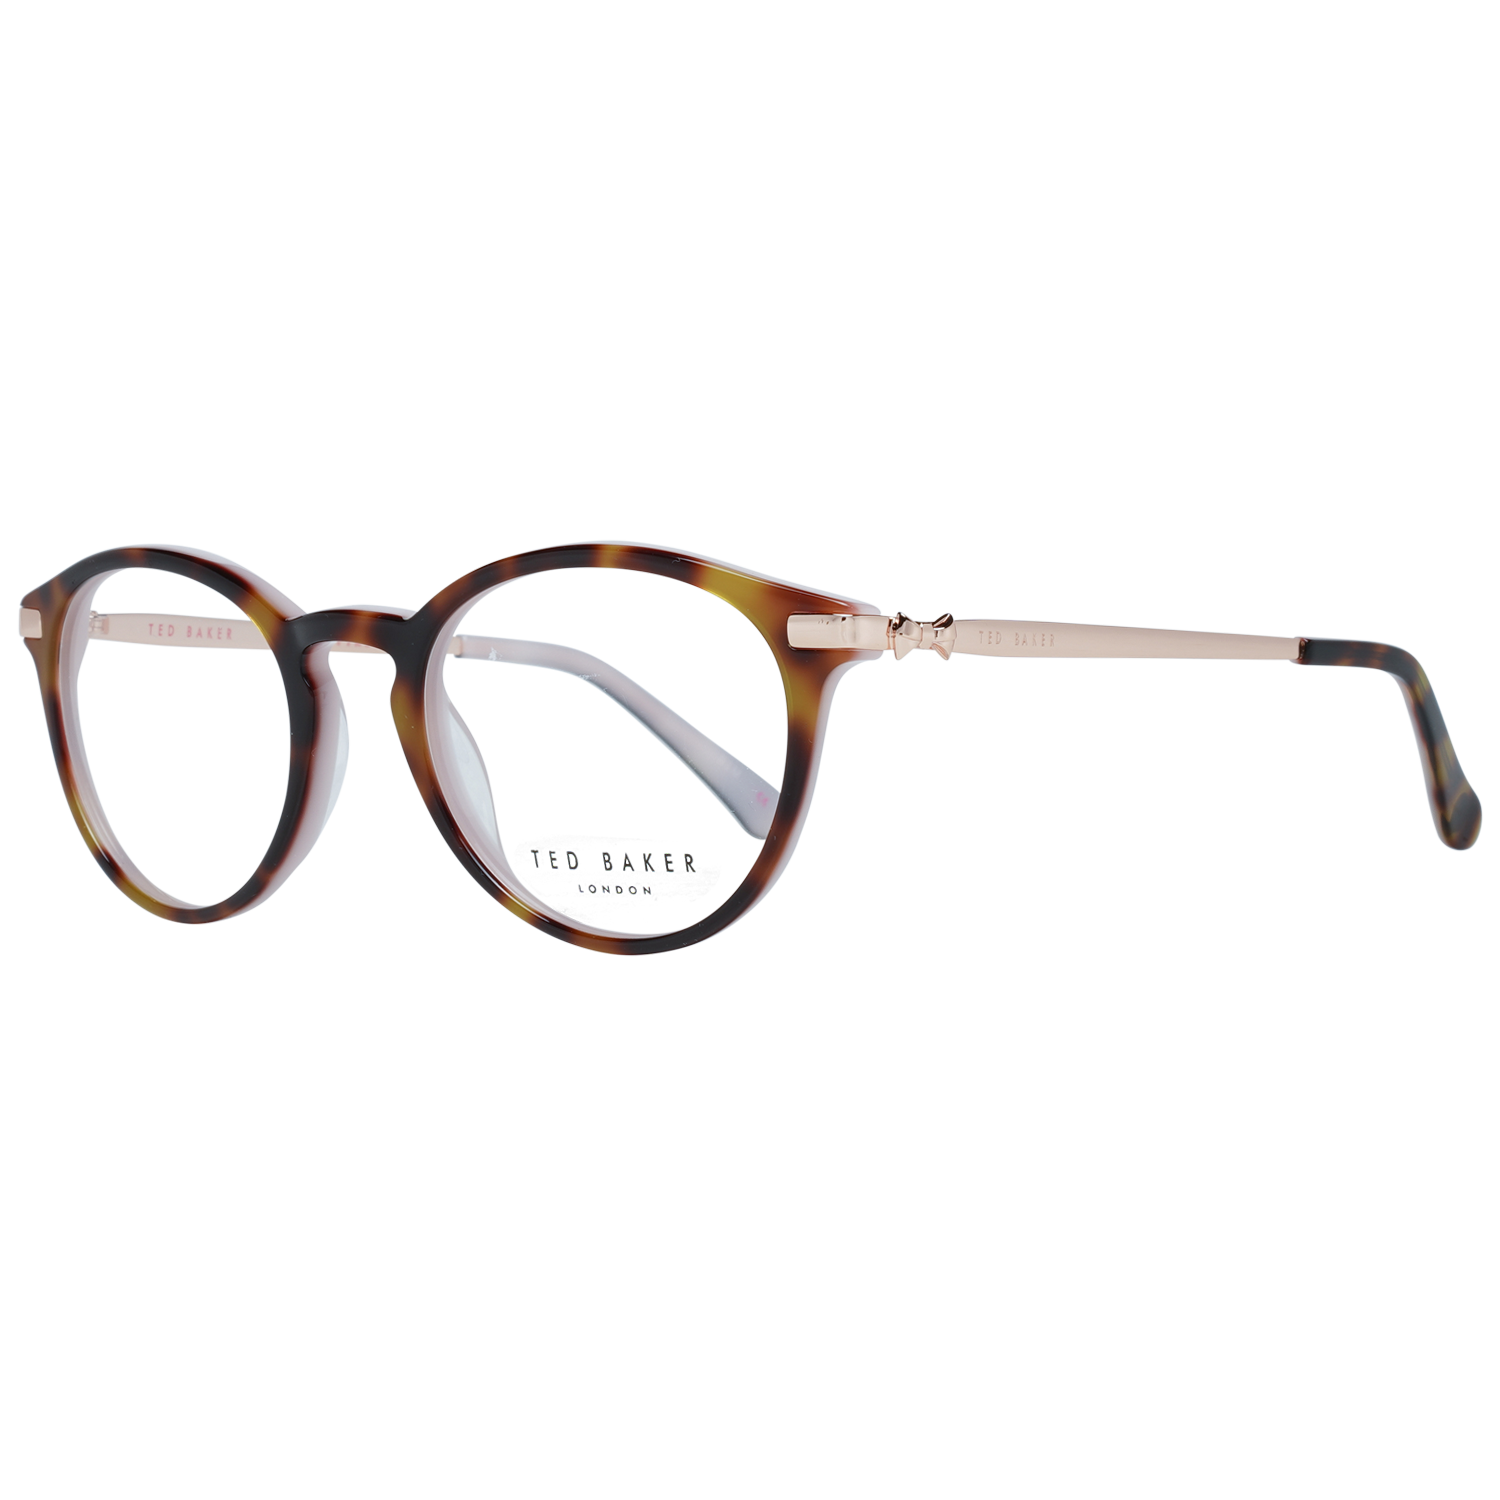 Ted Baker Frames Ted Baker Optical Frame TB9132 222 49 Val Eyeglasses Eyewear UK USA Australia 